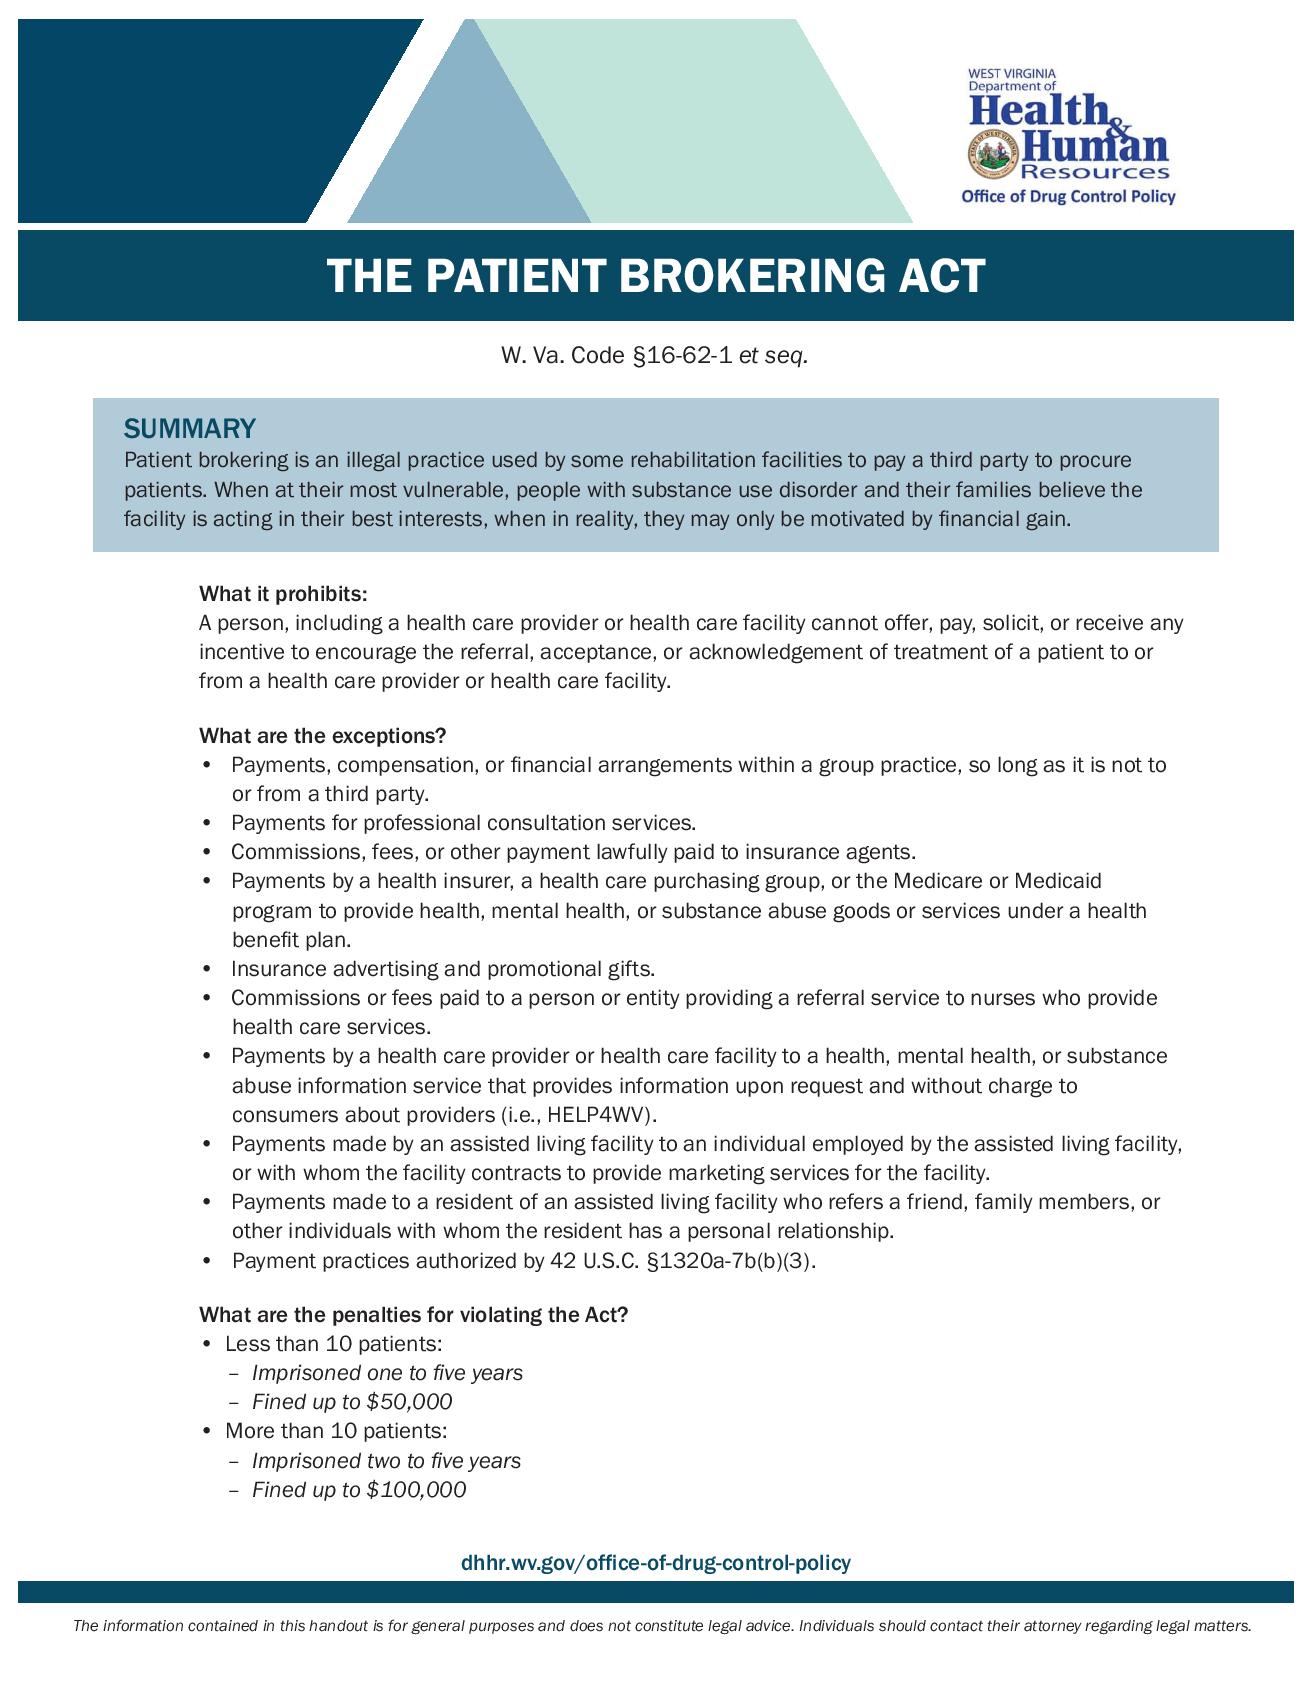 Patient Brokering Act Handout Final-page-001.jpg